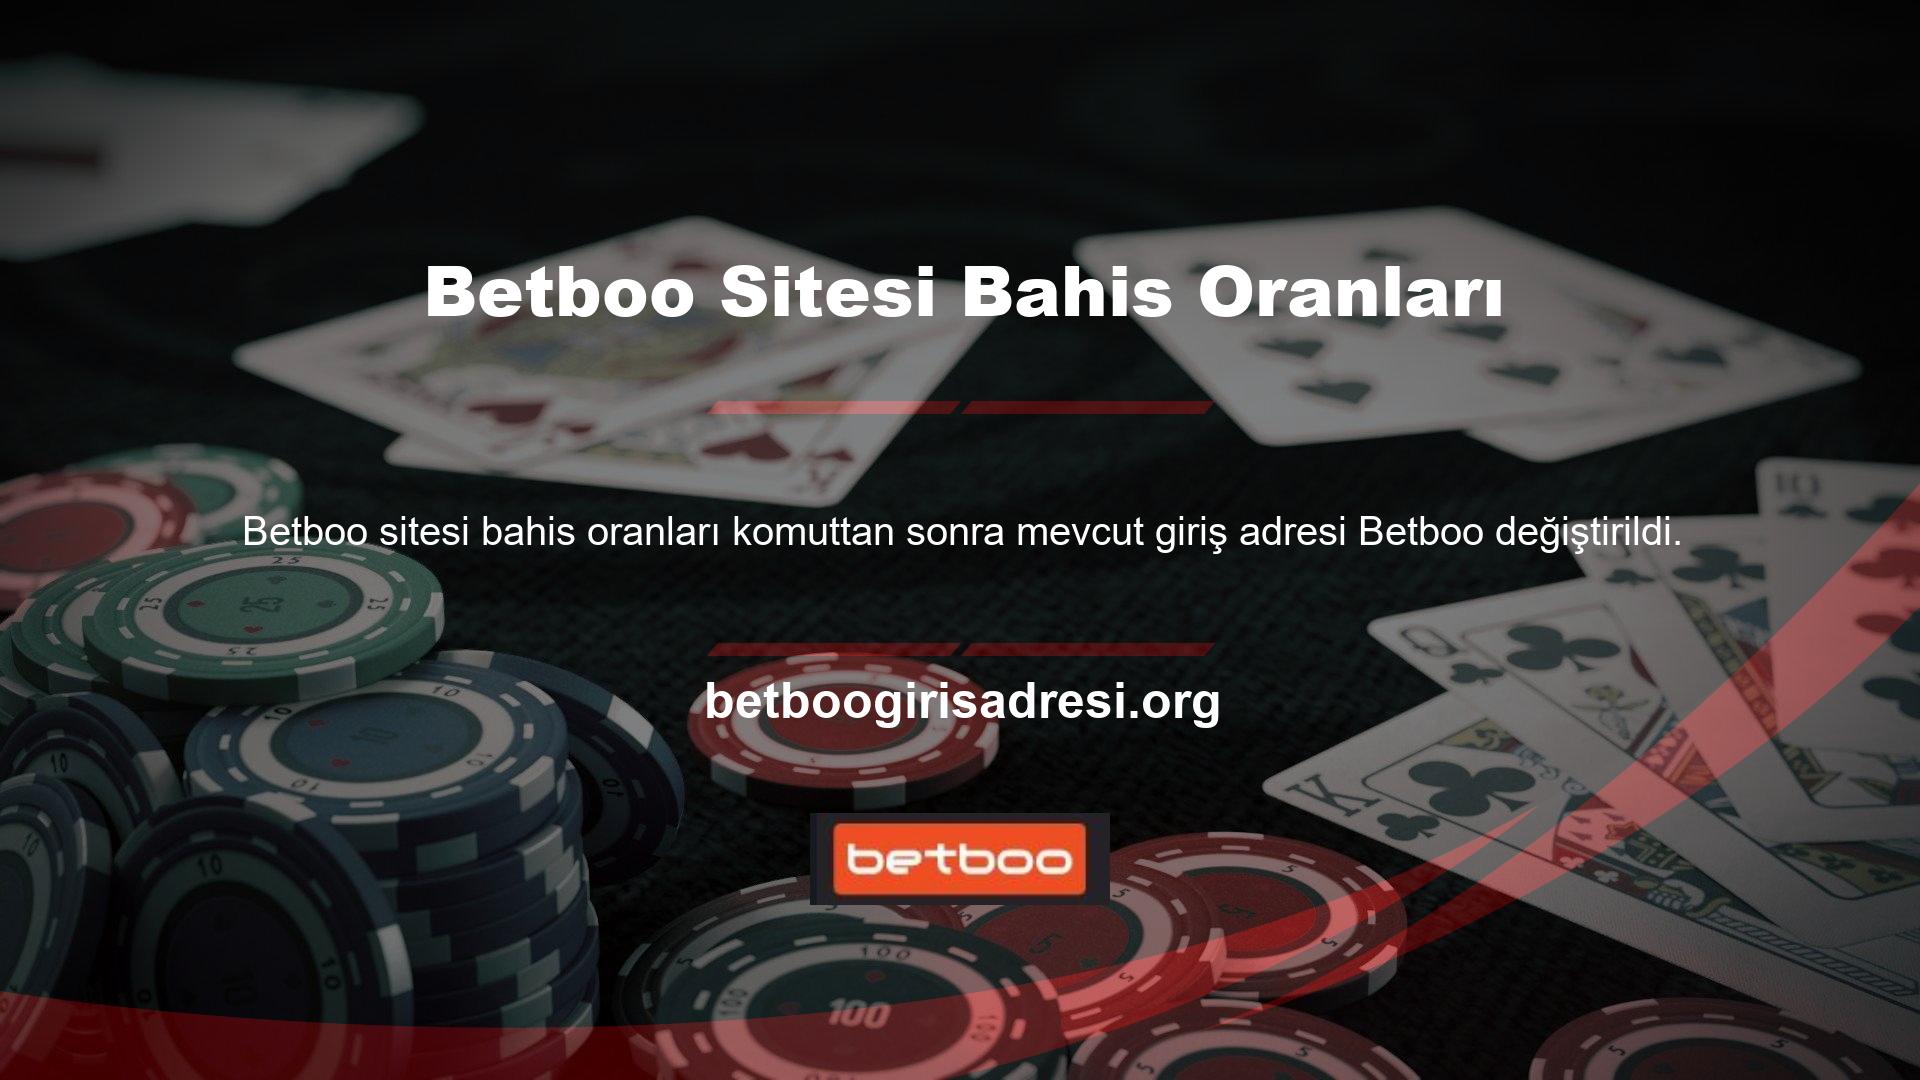 Canlı bir casino ve spor bahisleri platformu olan Betboo, mevcut koşulları aktif olarak ele alıyor ve bu soruyu kullanıcılarına yöneltiyor